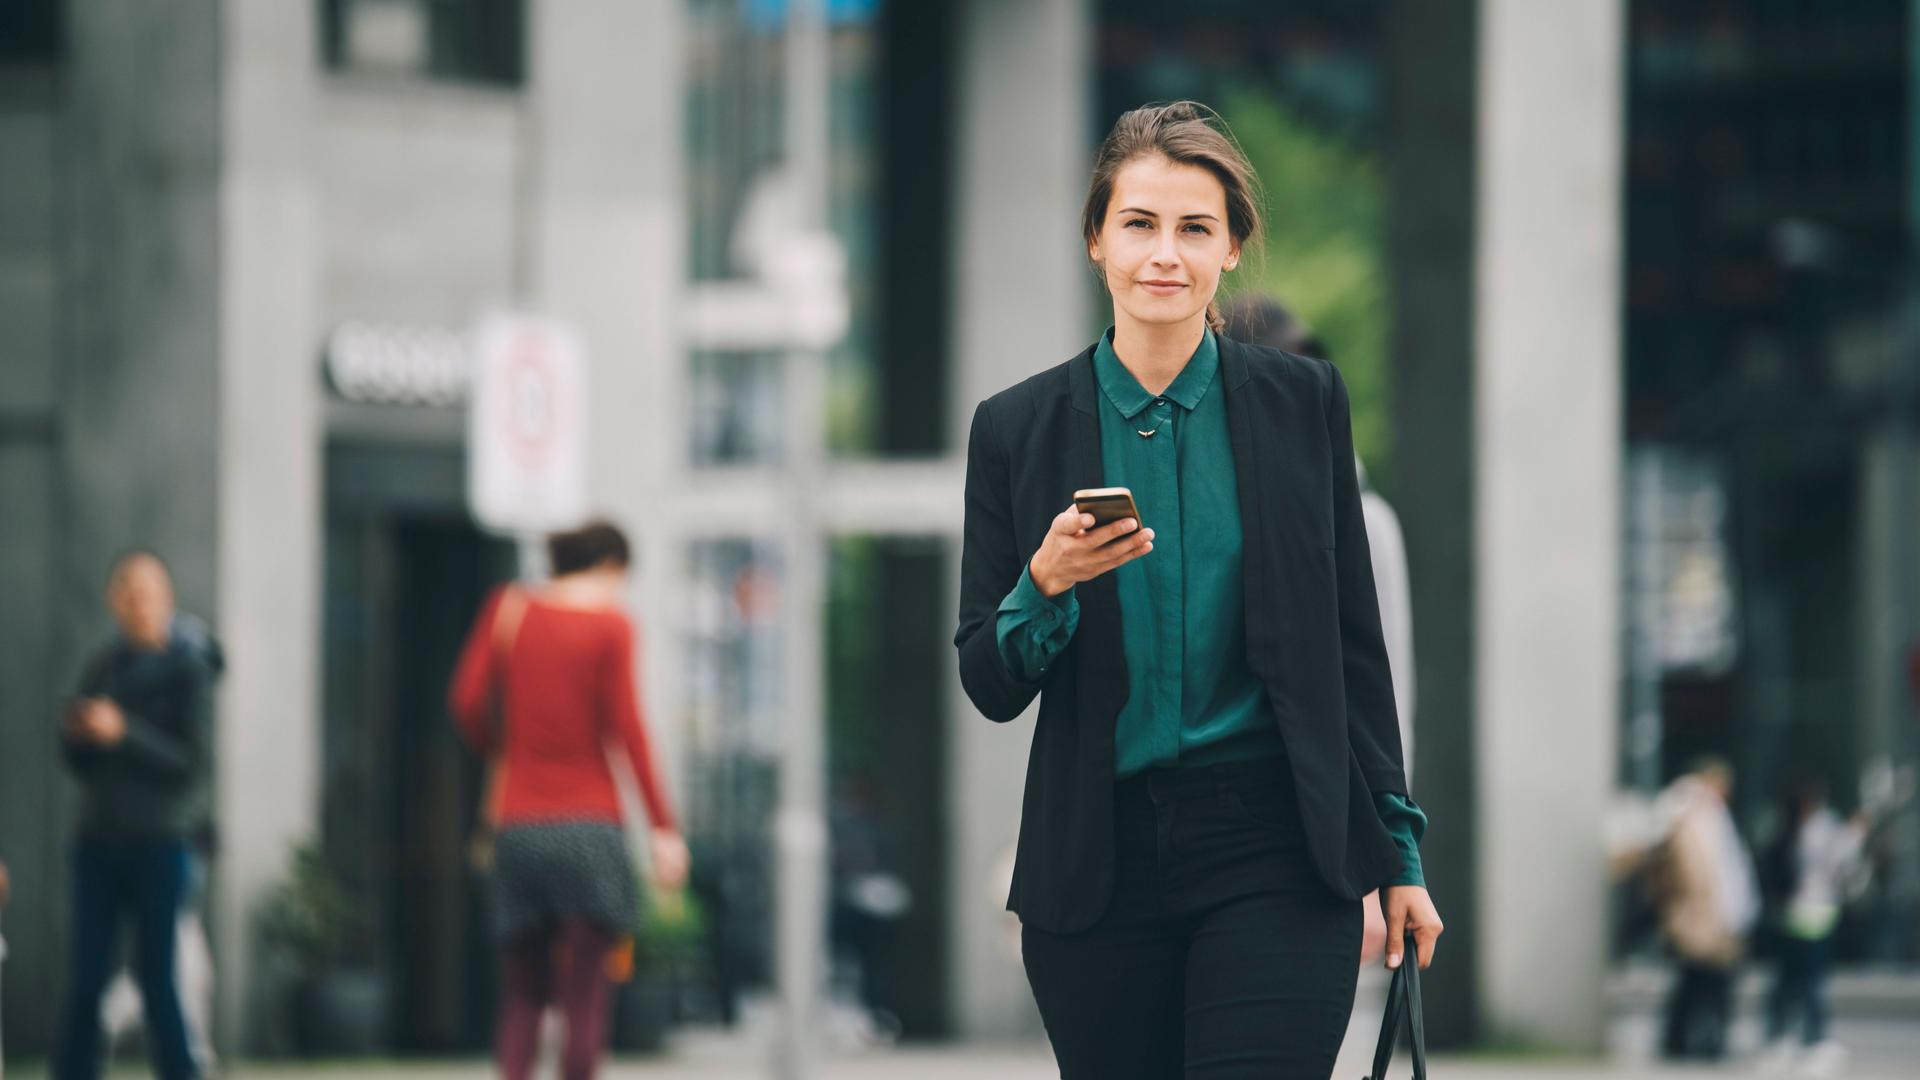 Junge Frau in Business-Kleidung mit Mobiltelefon in einer Hand und einer Tasche in der anderen, läuft auf einer Straße und blickt in die Kamera.